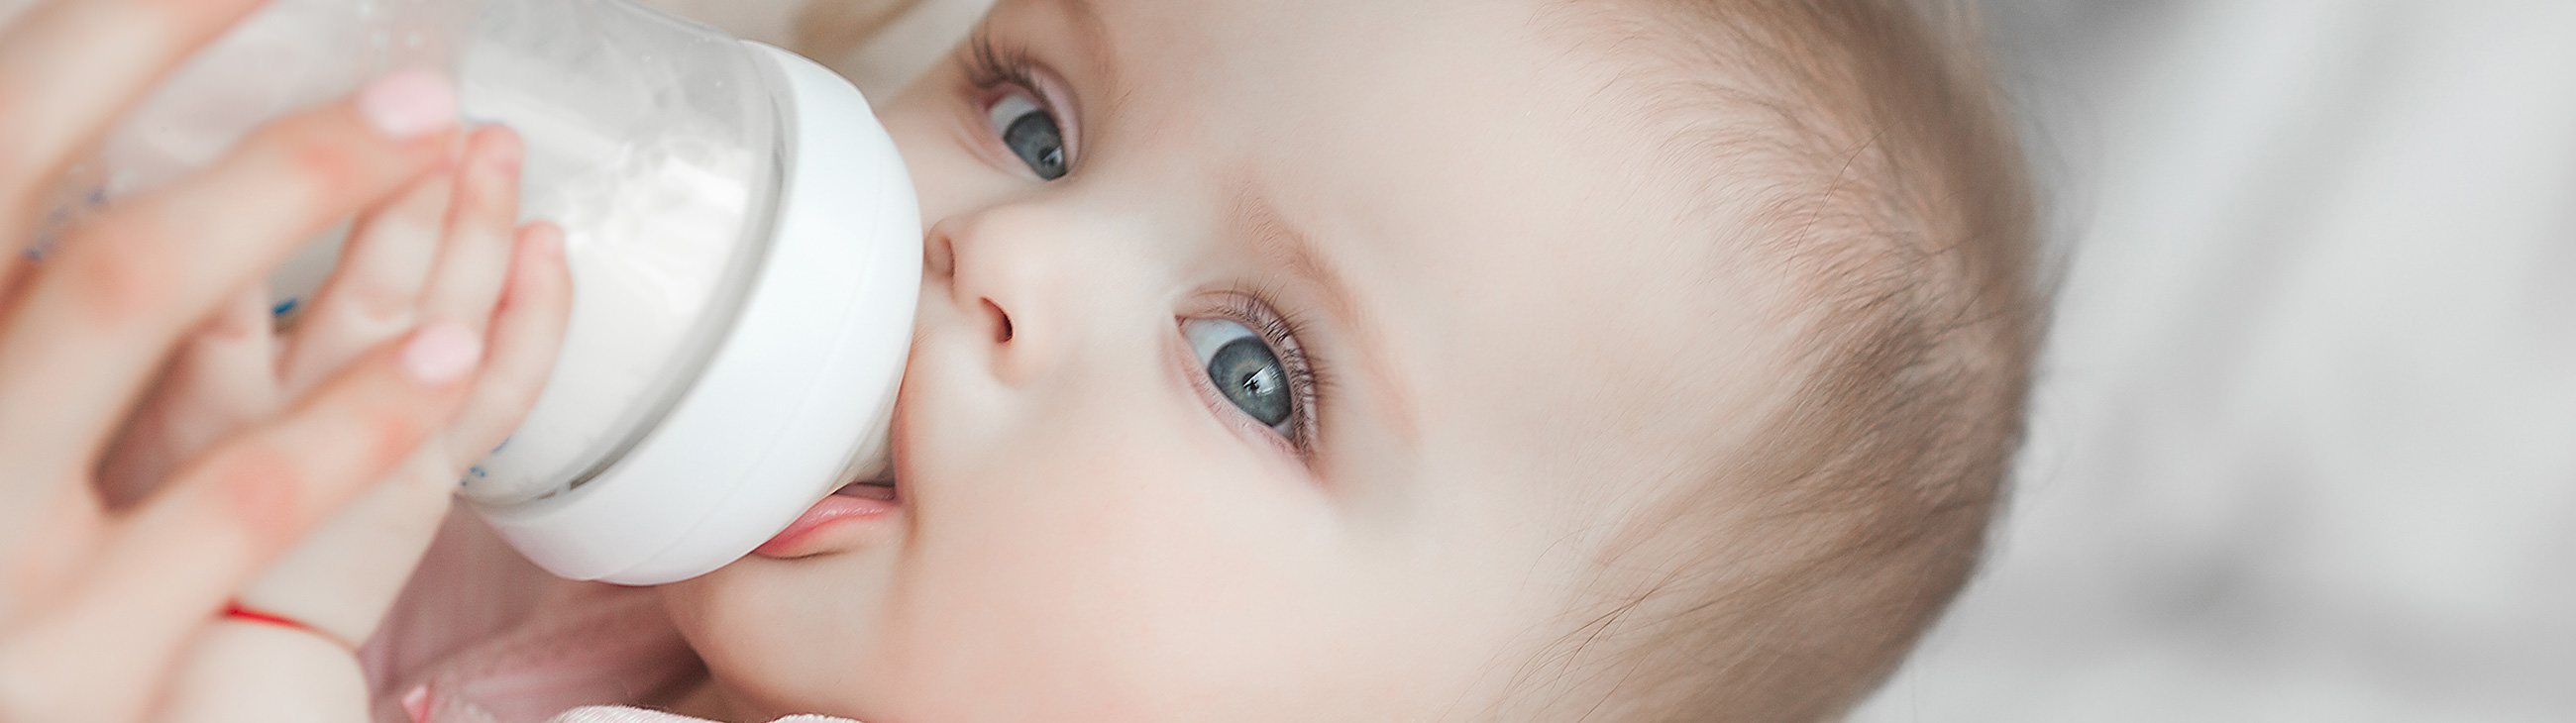 Eczema : ¿Qué leche dar a su bebé?